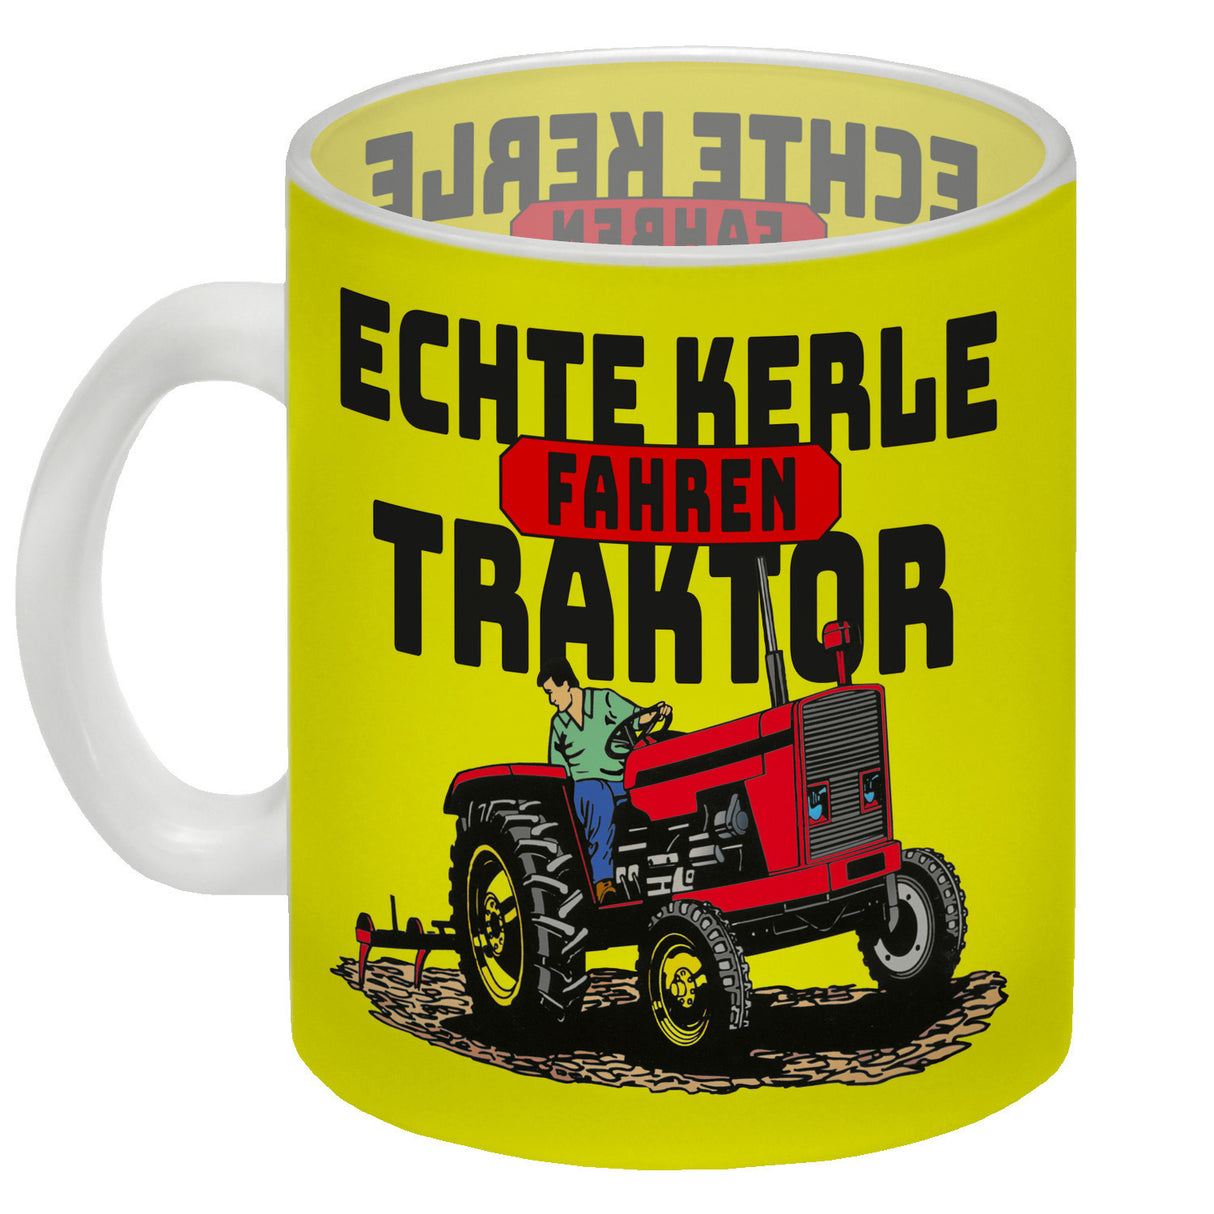 Echte Kerle fahren Traktor Kaffeebecher in braun